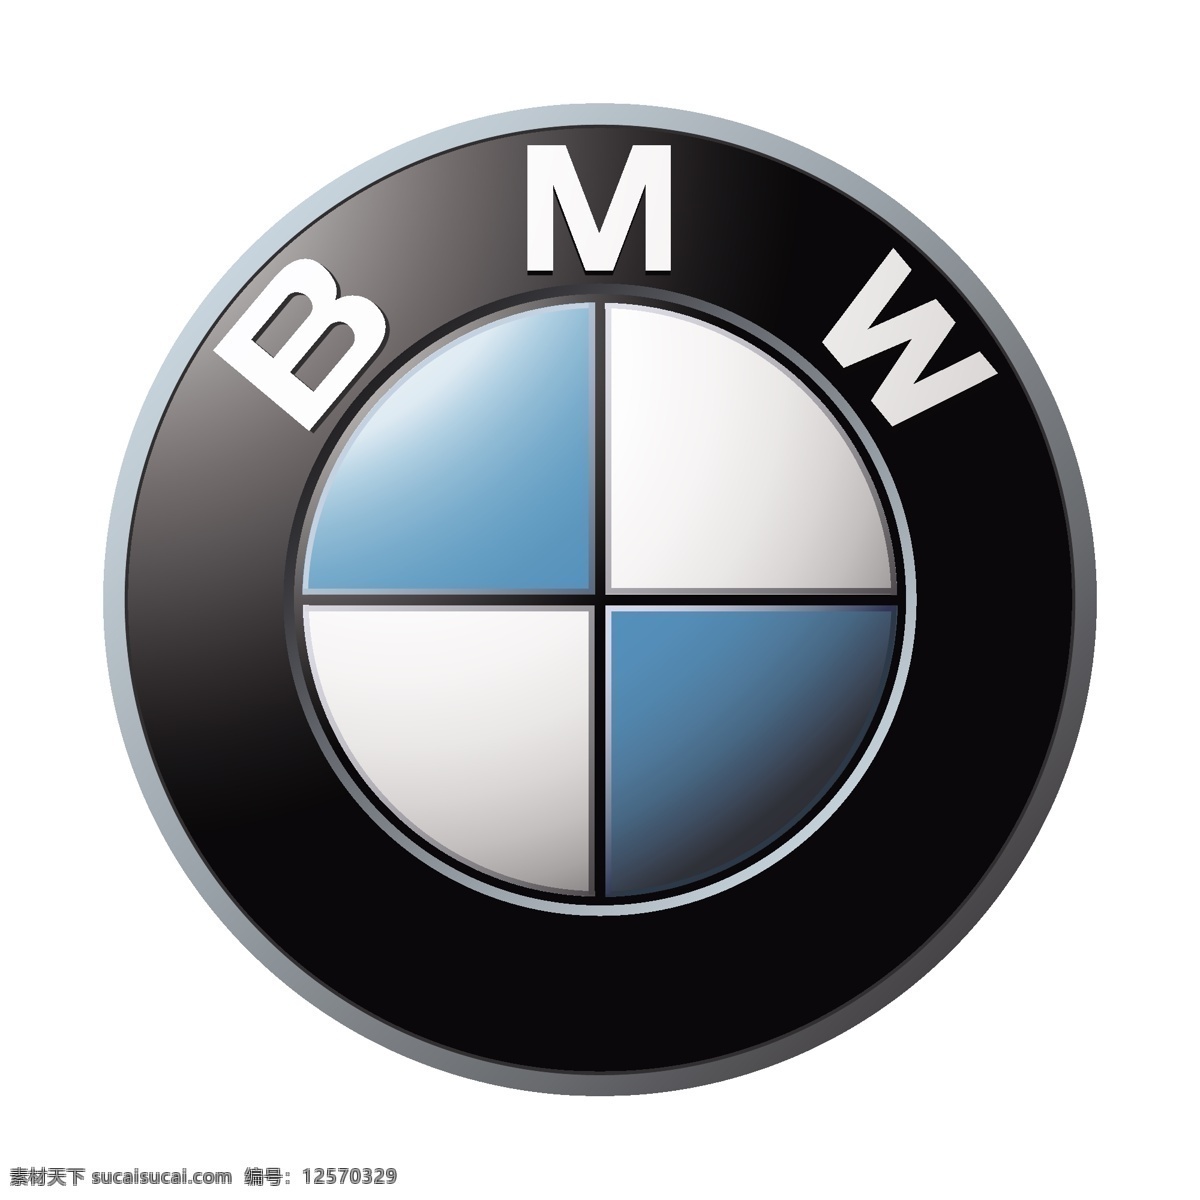 奔驰 logo 奔驰logo bmw bmwlogo 汽车logo 标志图标 公共标识标志